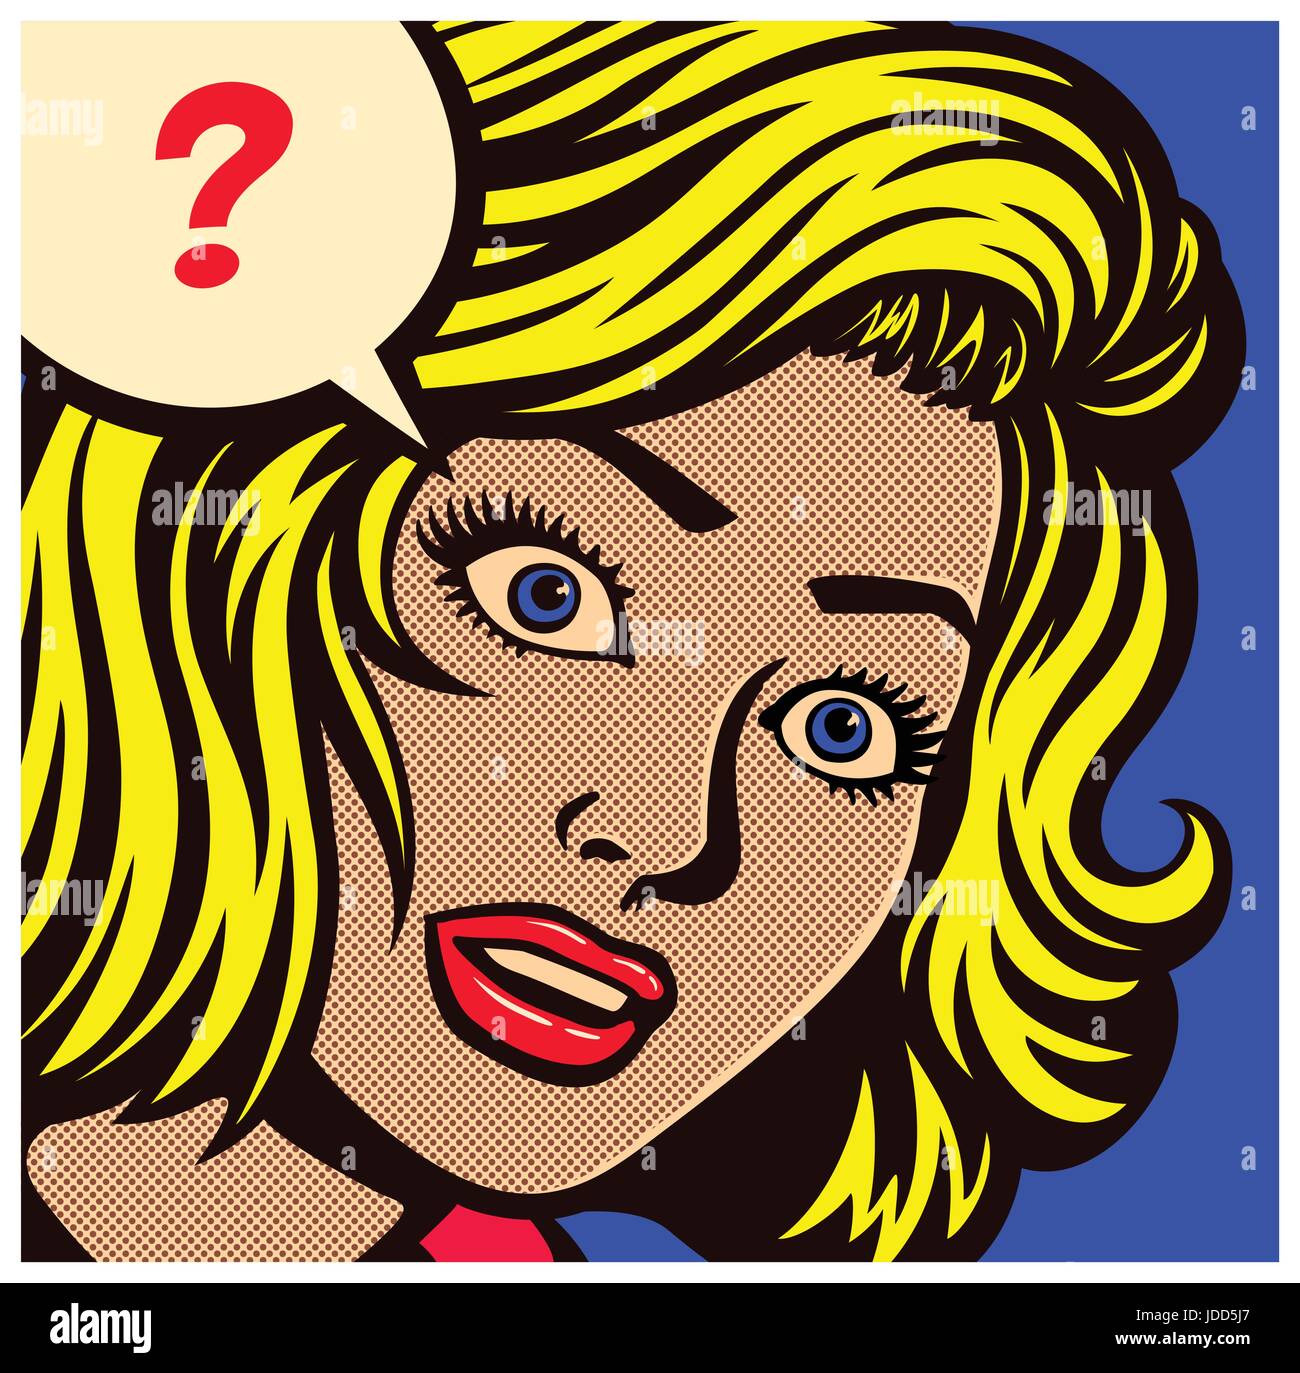 Pop Art Stil Comic panel mit verwirrt, ratlos oder verwirrten Frau und  Sprechblase mit Fragezeichen Vektor poster Design Illustration  Stock-Vektorgrafik - Alamy